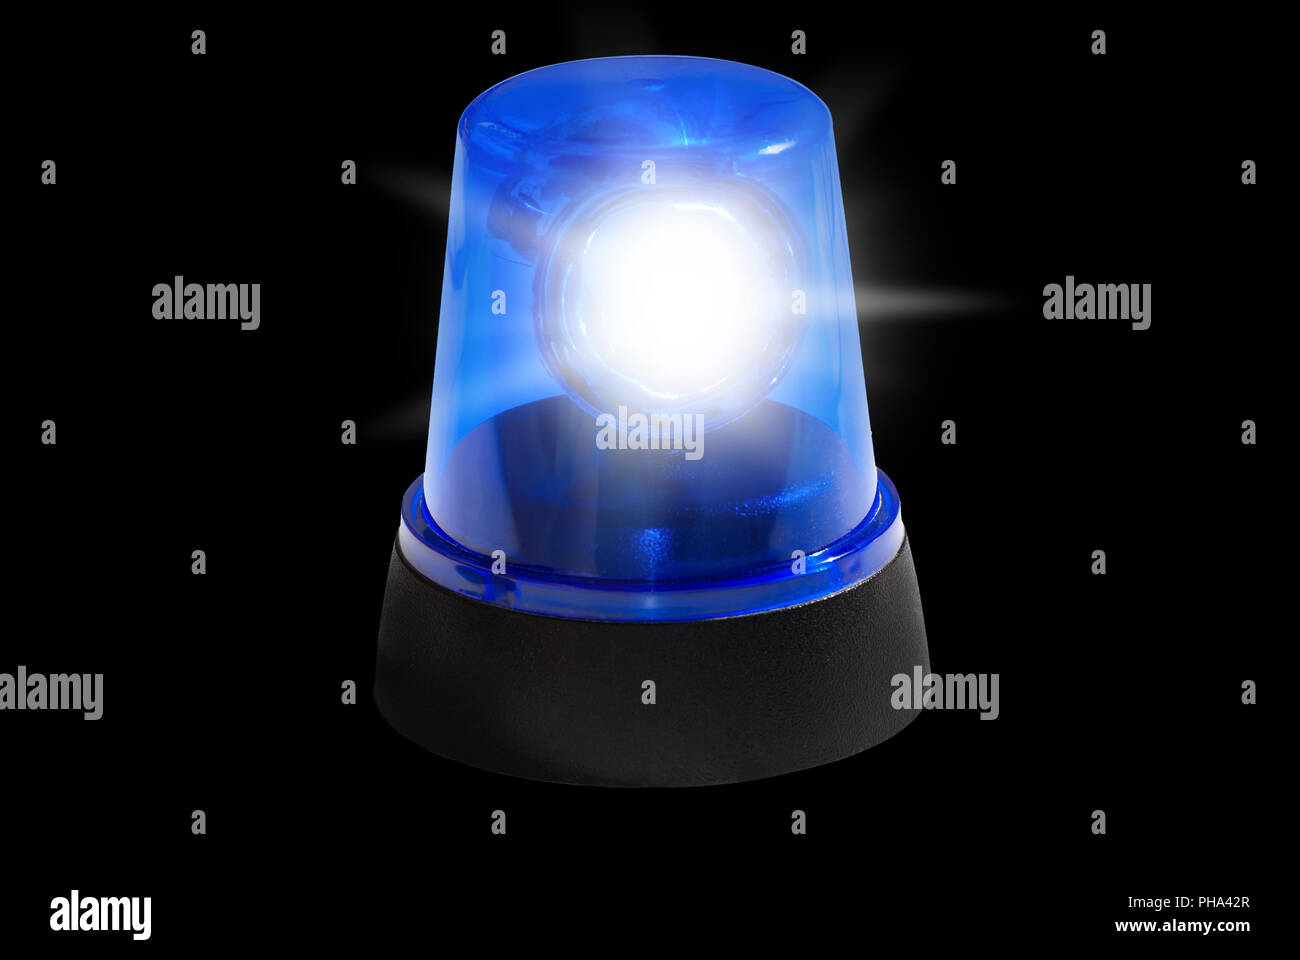 Polizei Sirene Notlicht Stockfotografie - Alamy